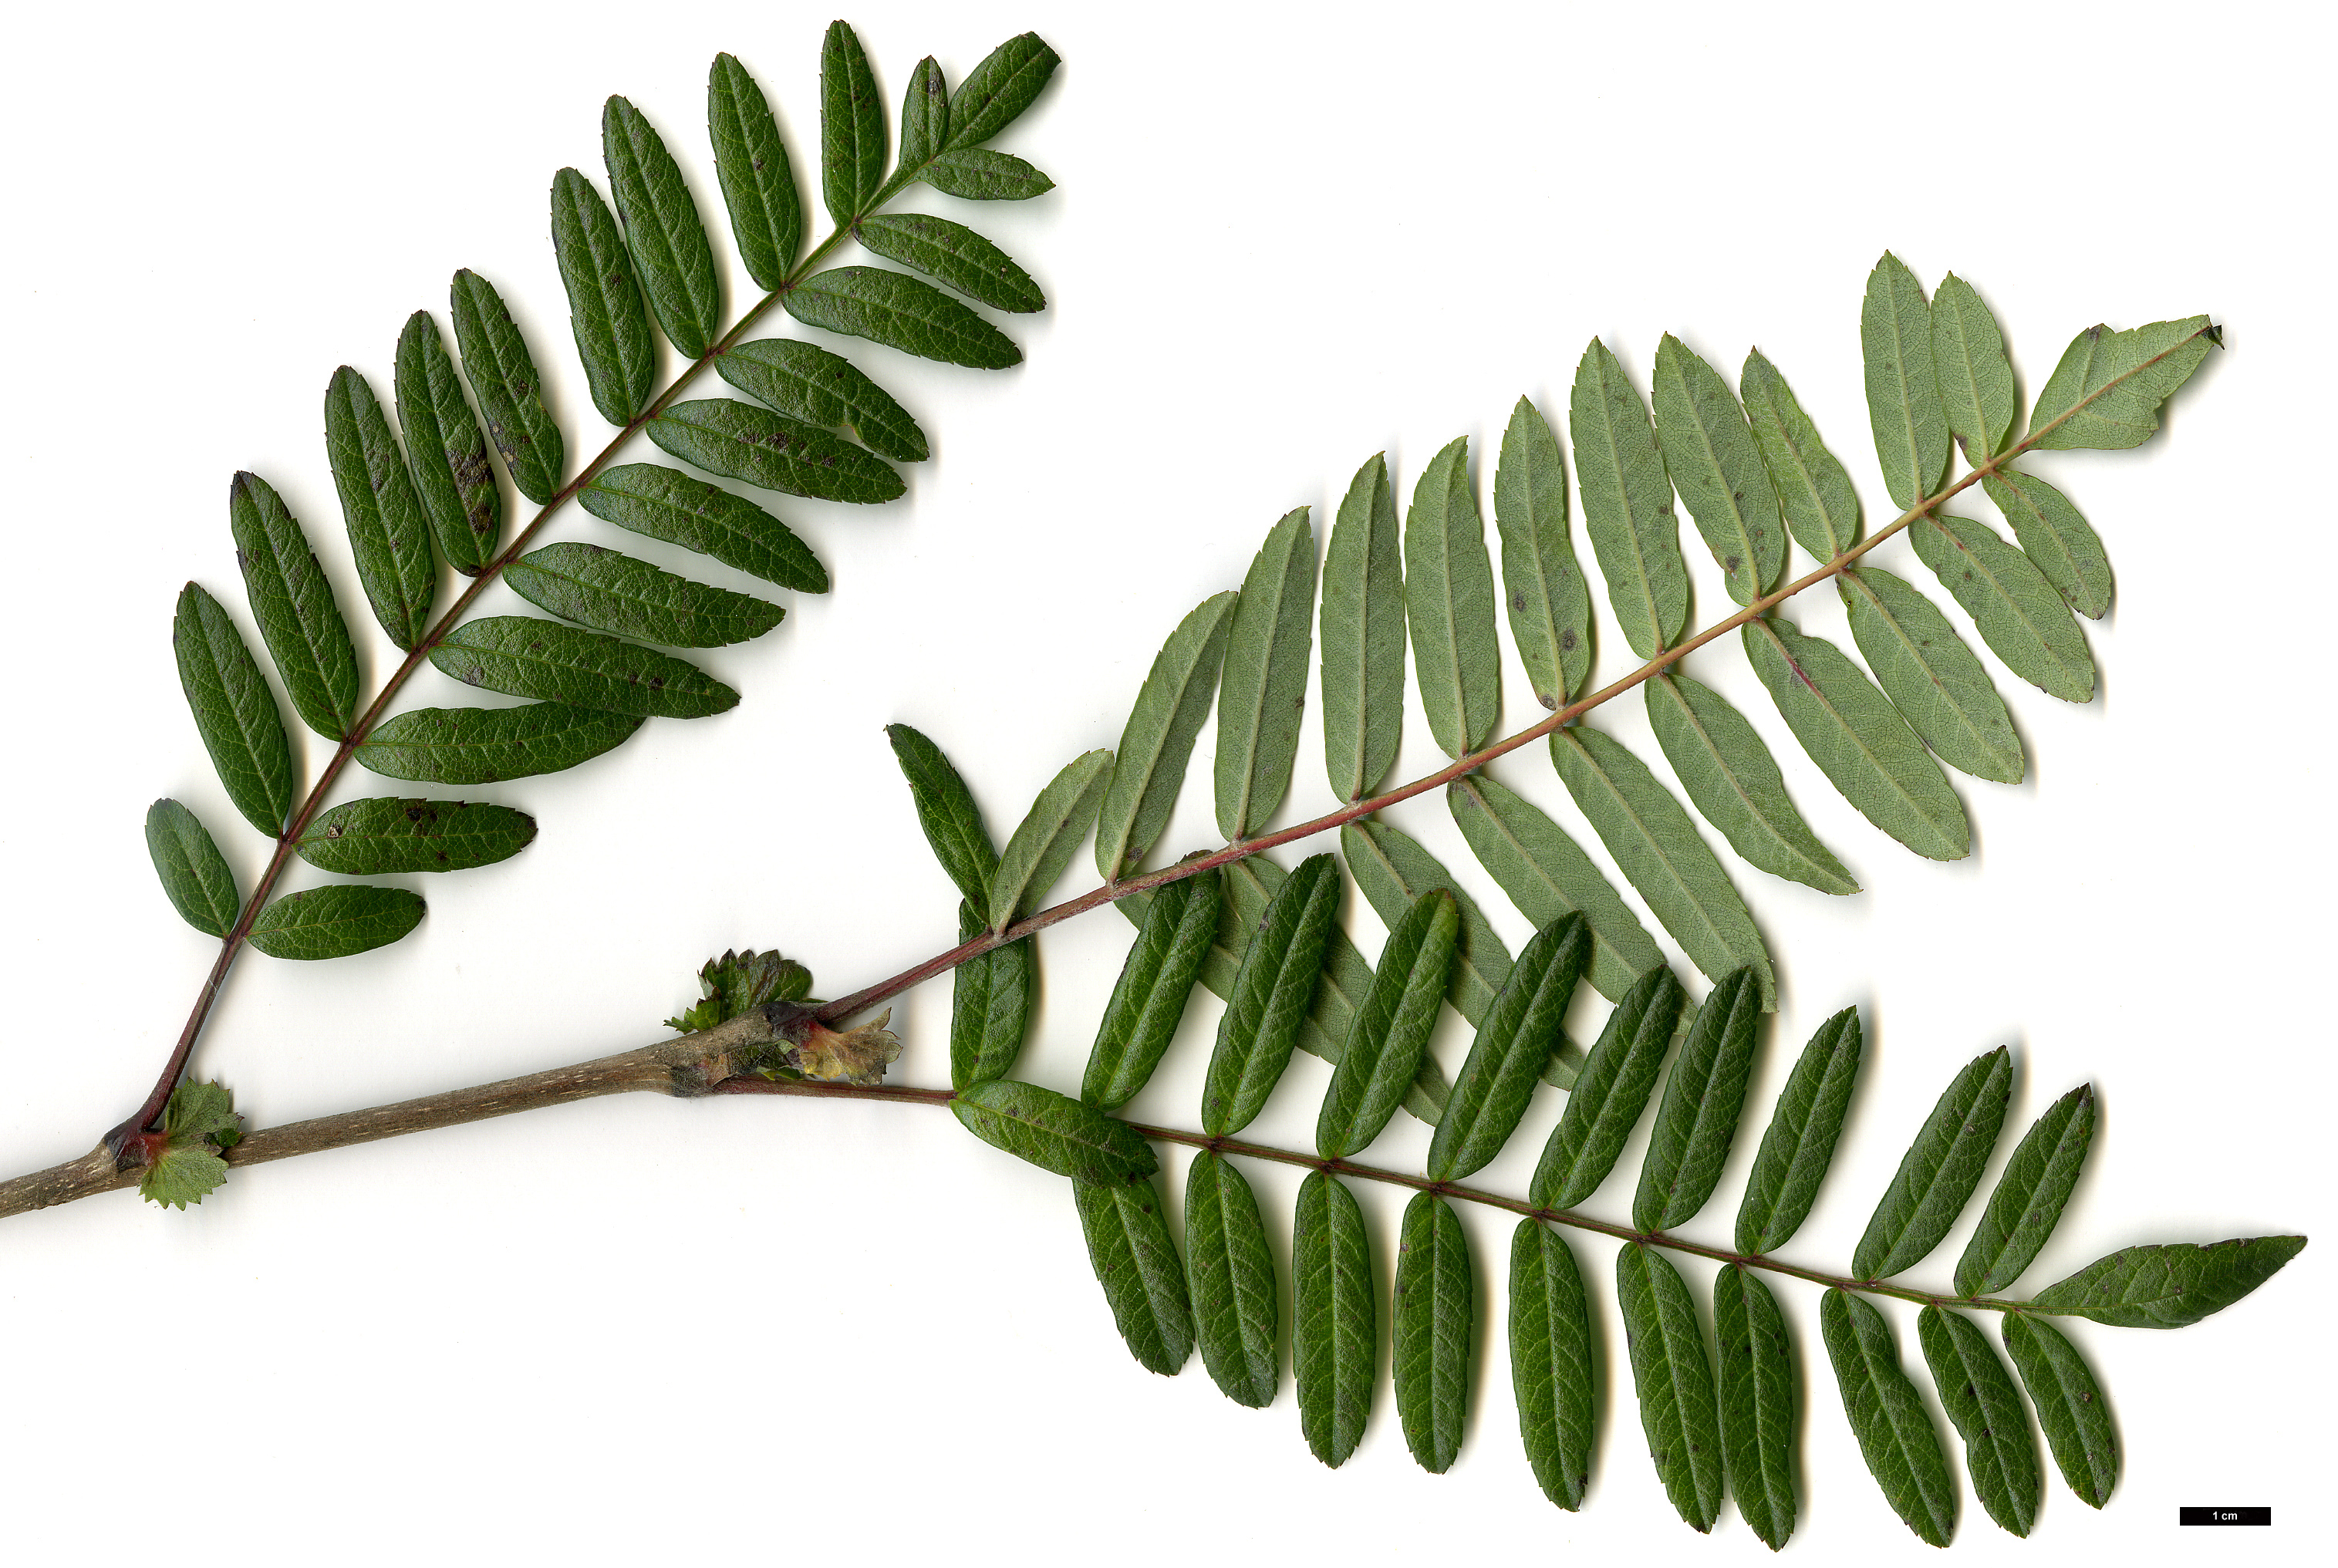 High resolution image: Family: Rosaceae - Genus: Sorbus - Taxon: scalaris